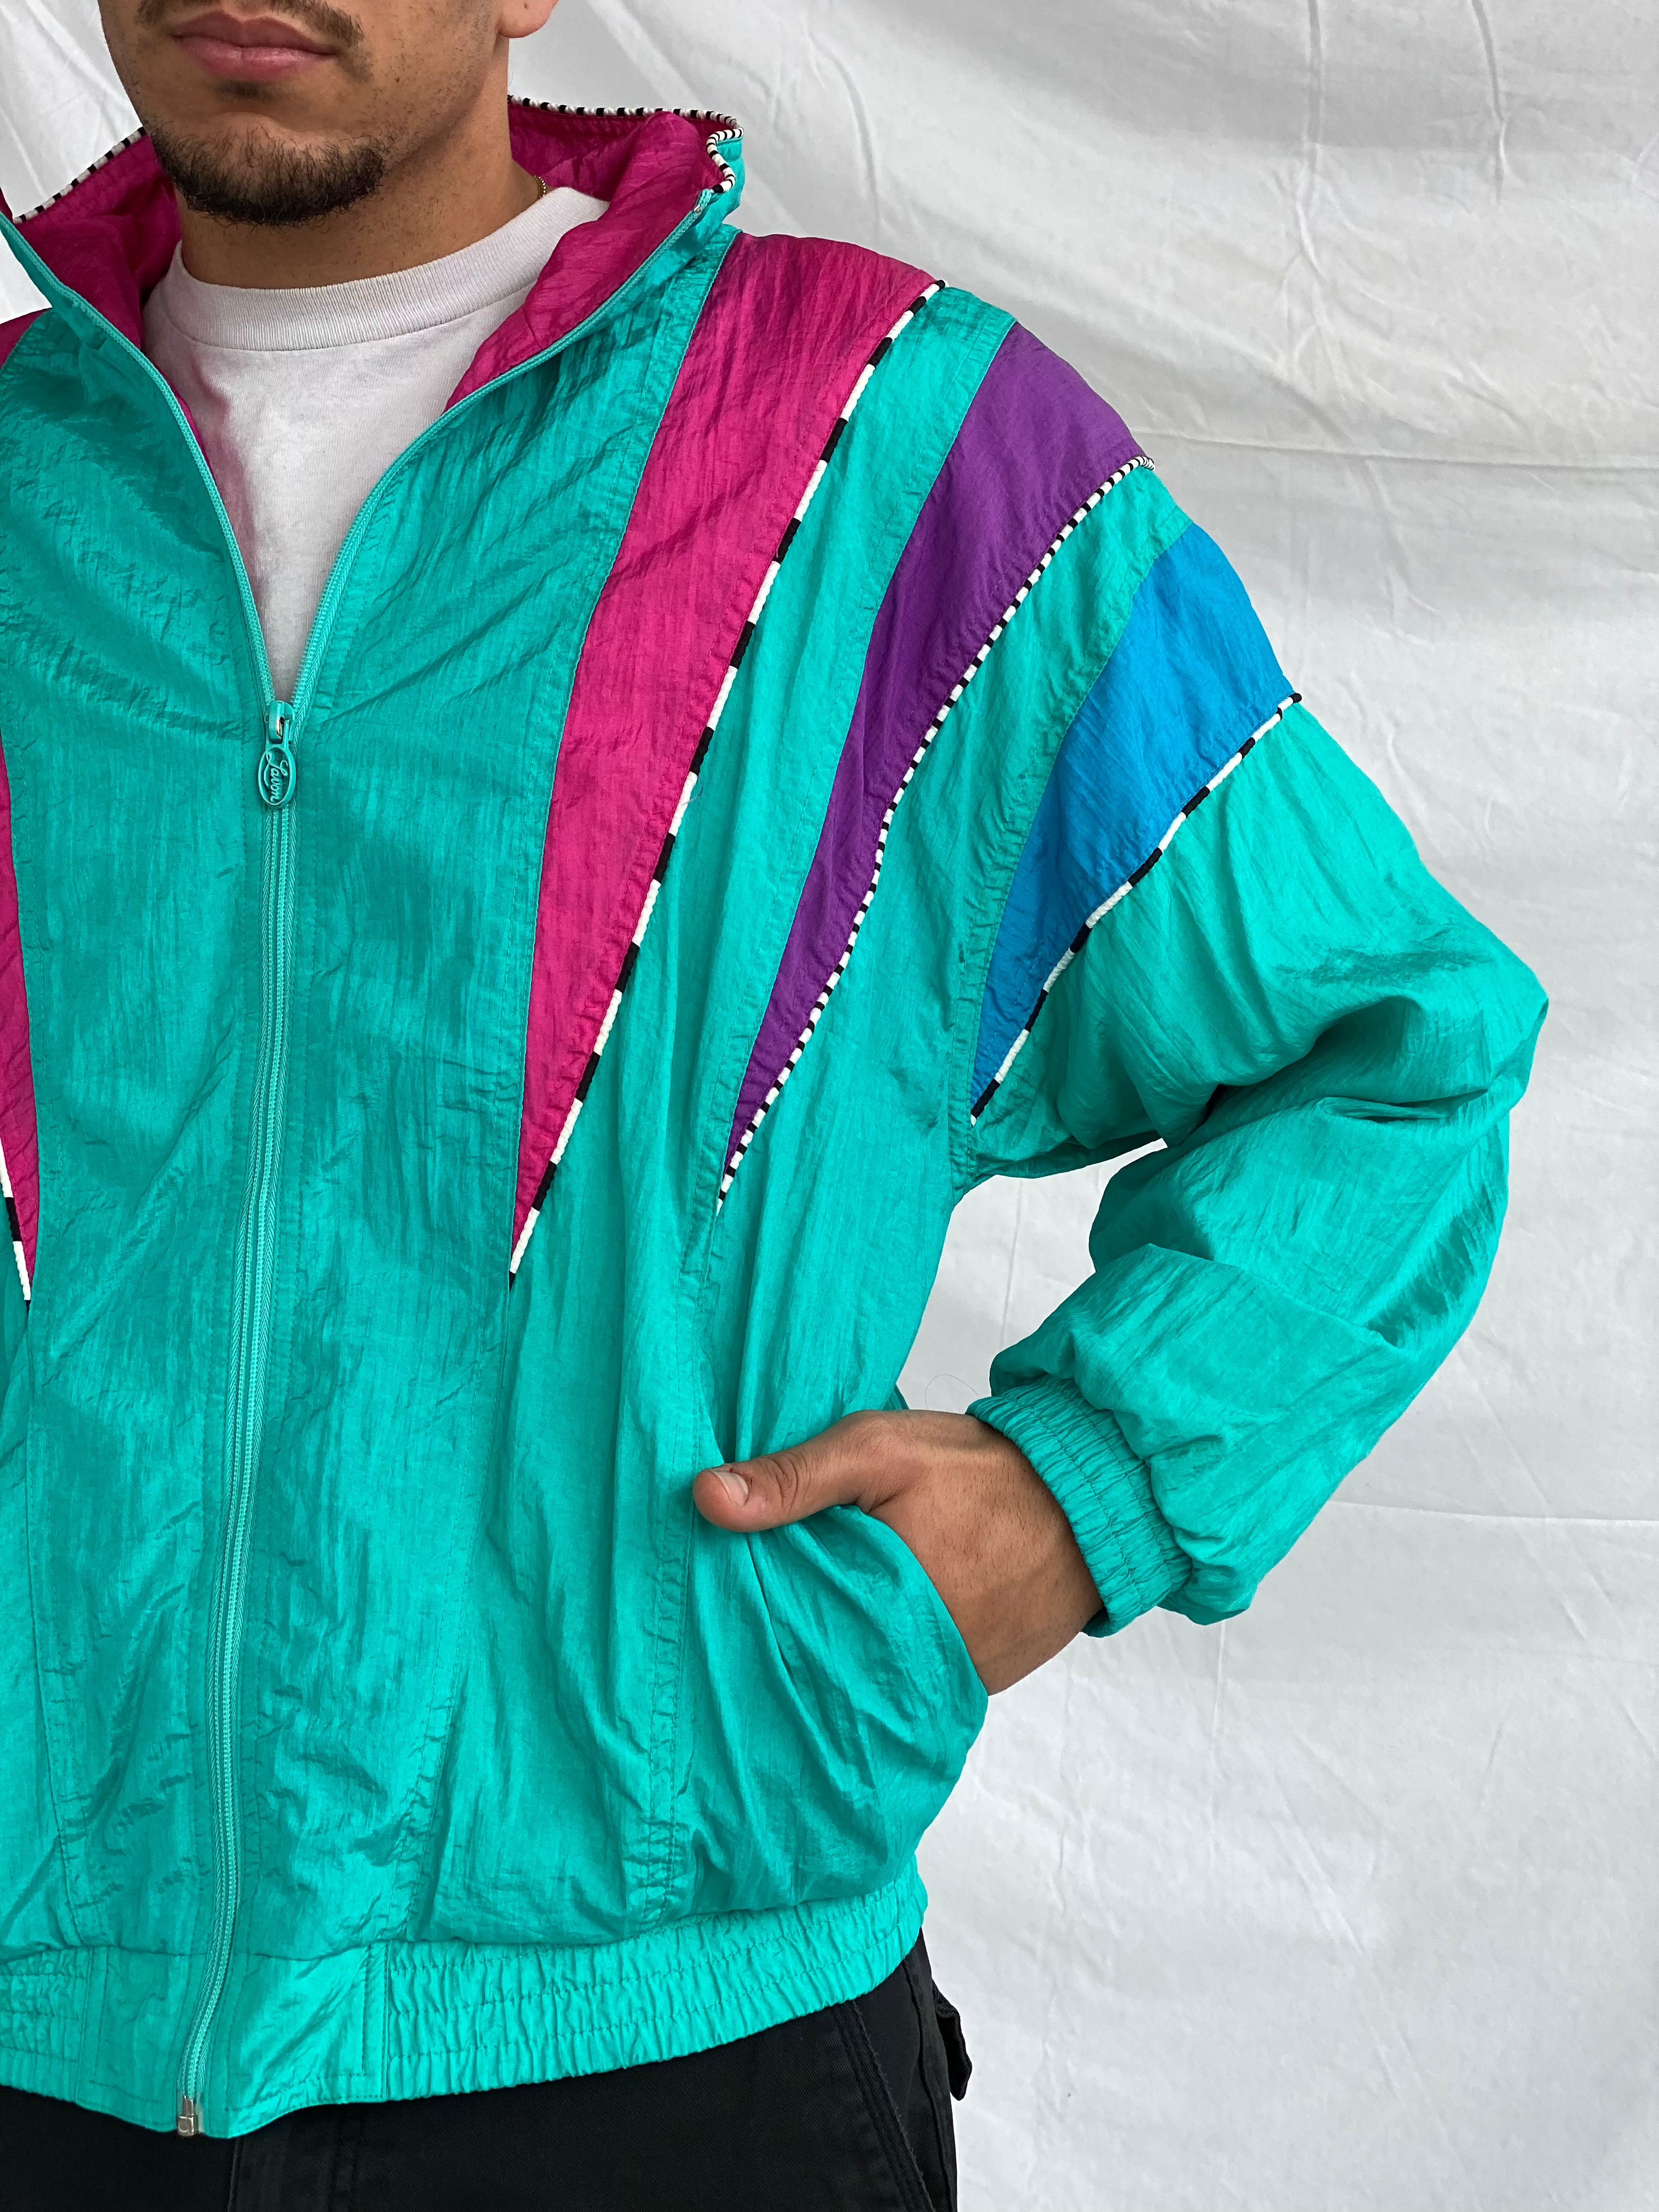 Vintage LAVON By Cheerful Corp Windbreaker Jacket - Balagan Vintage Windbreaker Jacket 80s, 90s, men, multicolored, nylon, outerwear, streetwear, techno, vintage, vintage windbreaker, windbreaker, windbreaker jacket, winter